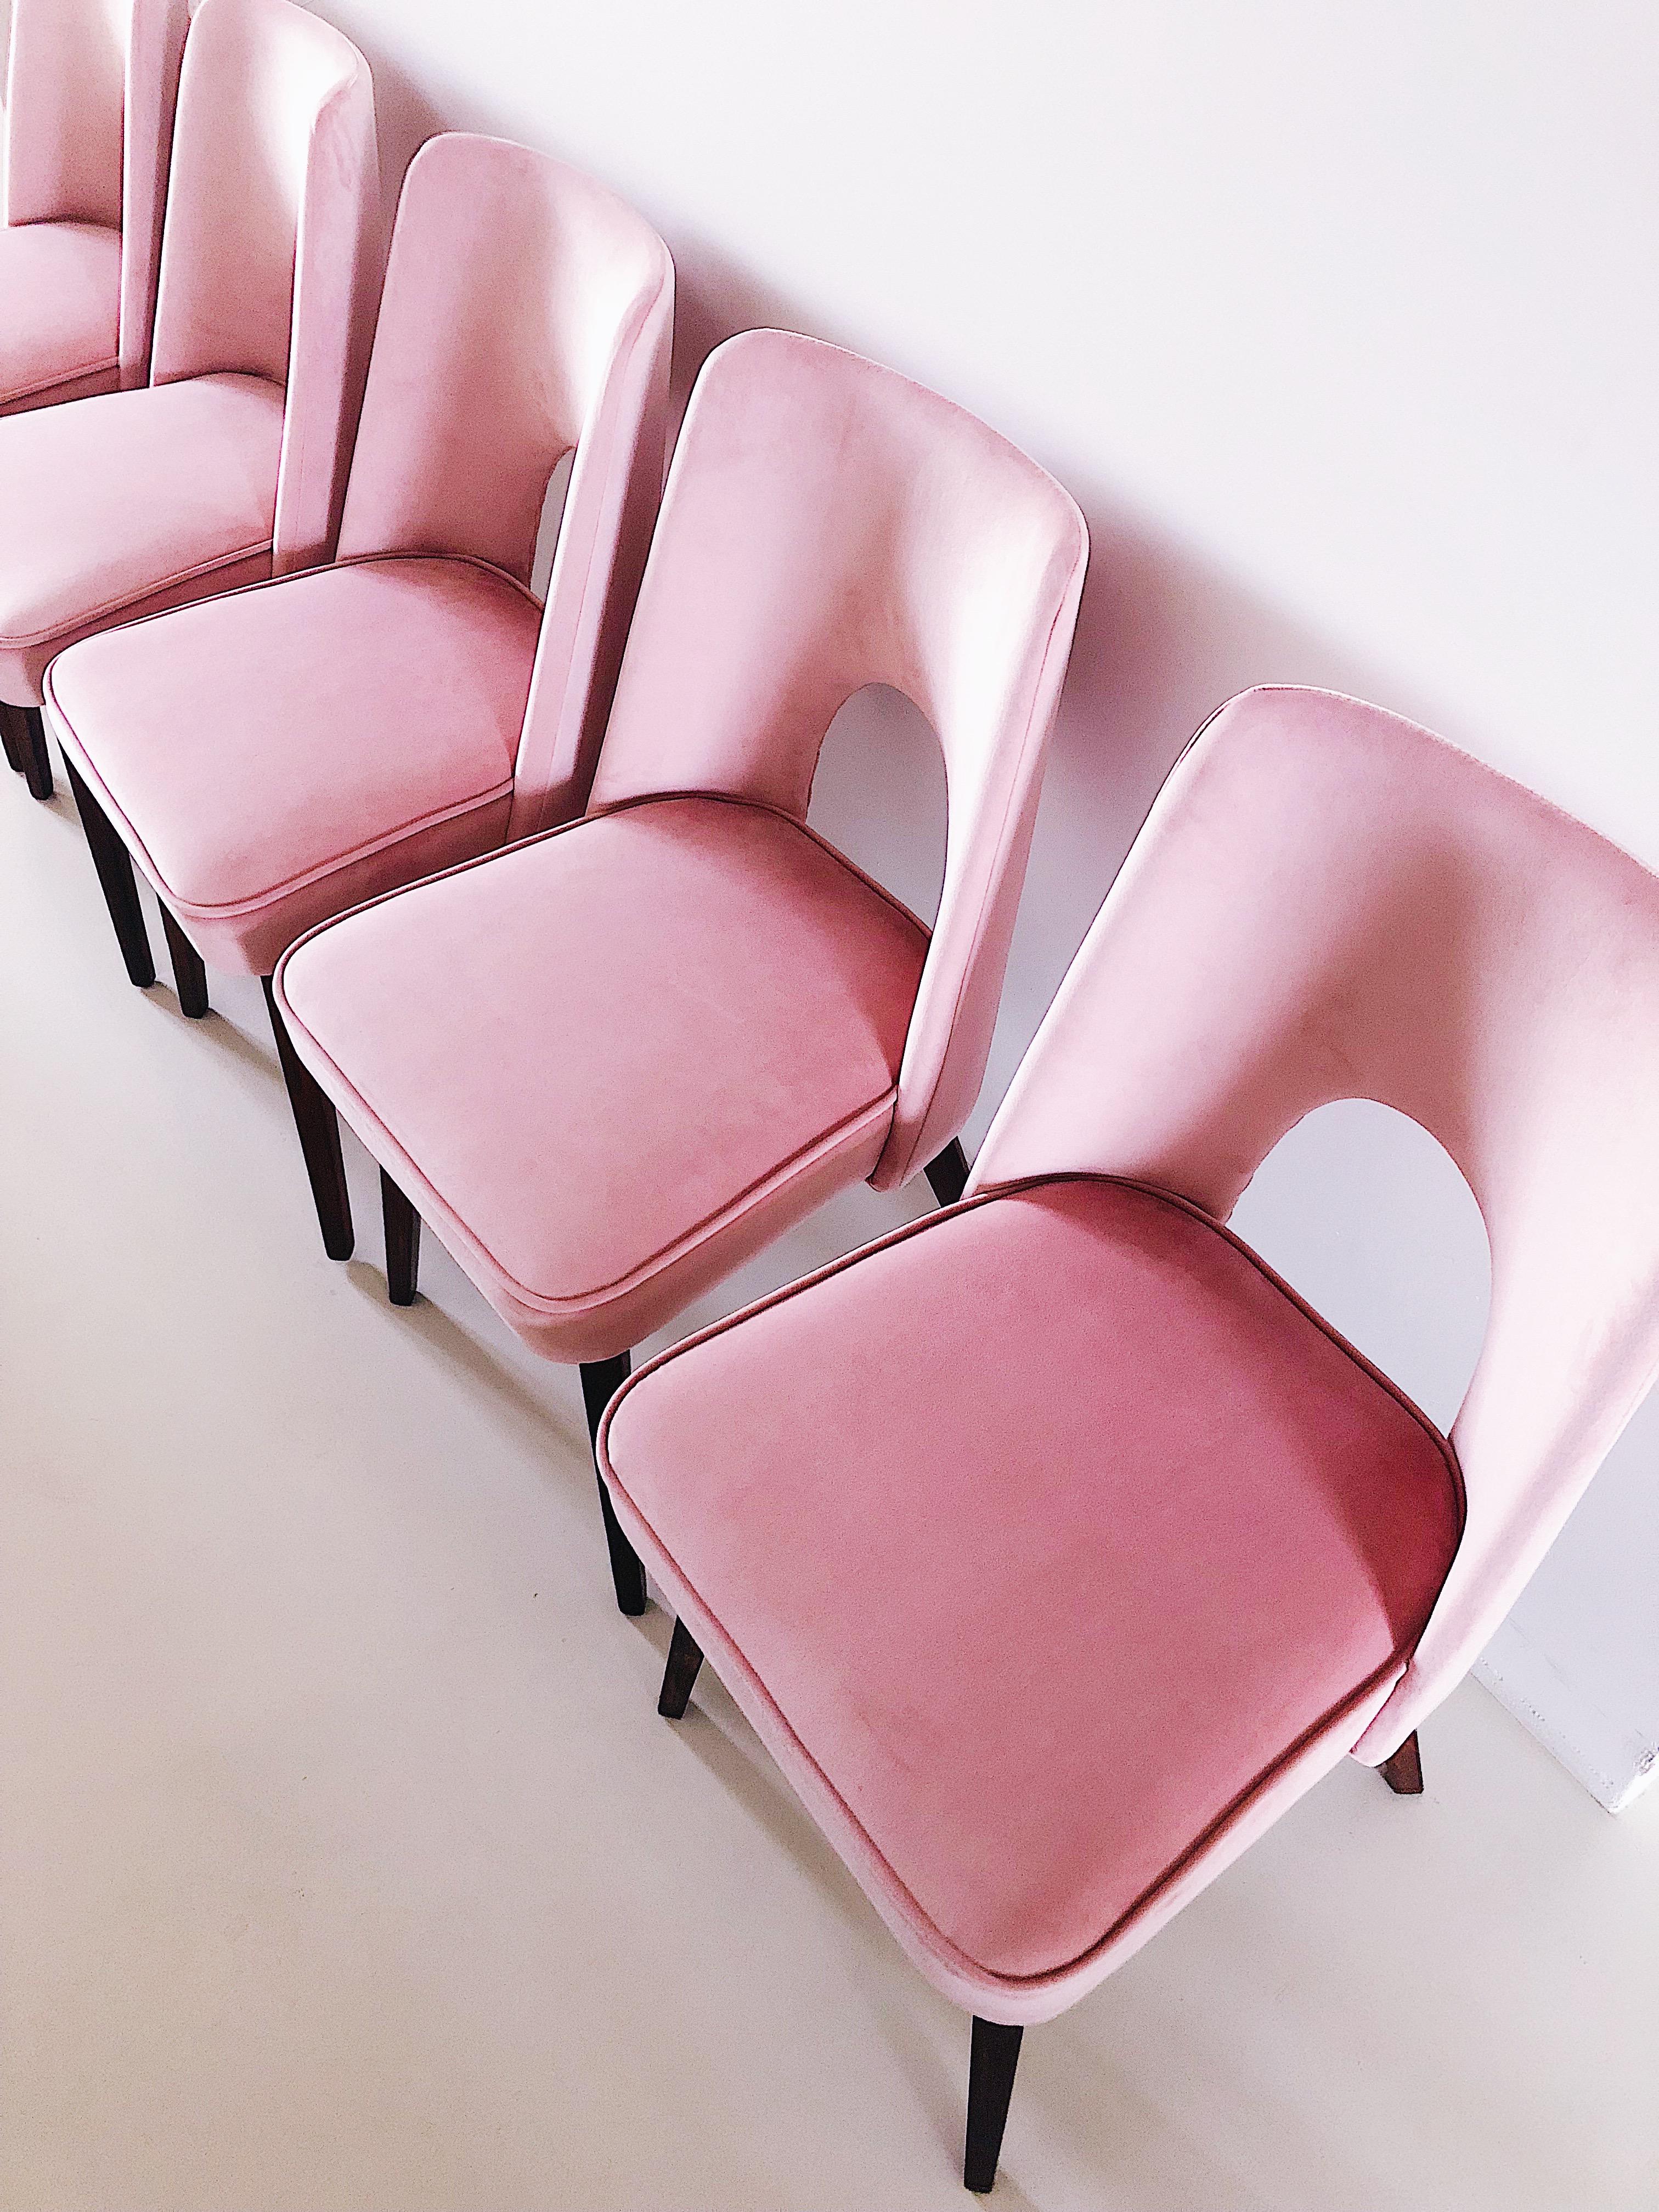 Ensemble de deux chaises rose pâle « Shell », années 1960 Excellent état - En vente à 05-080 Hornowek, PL